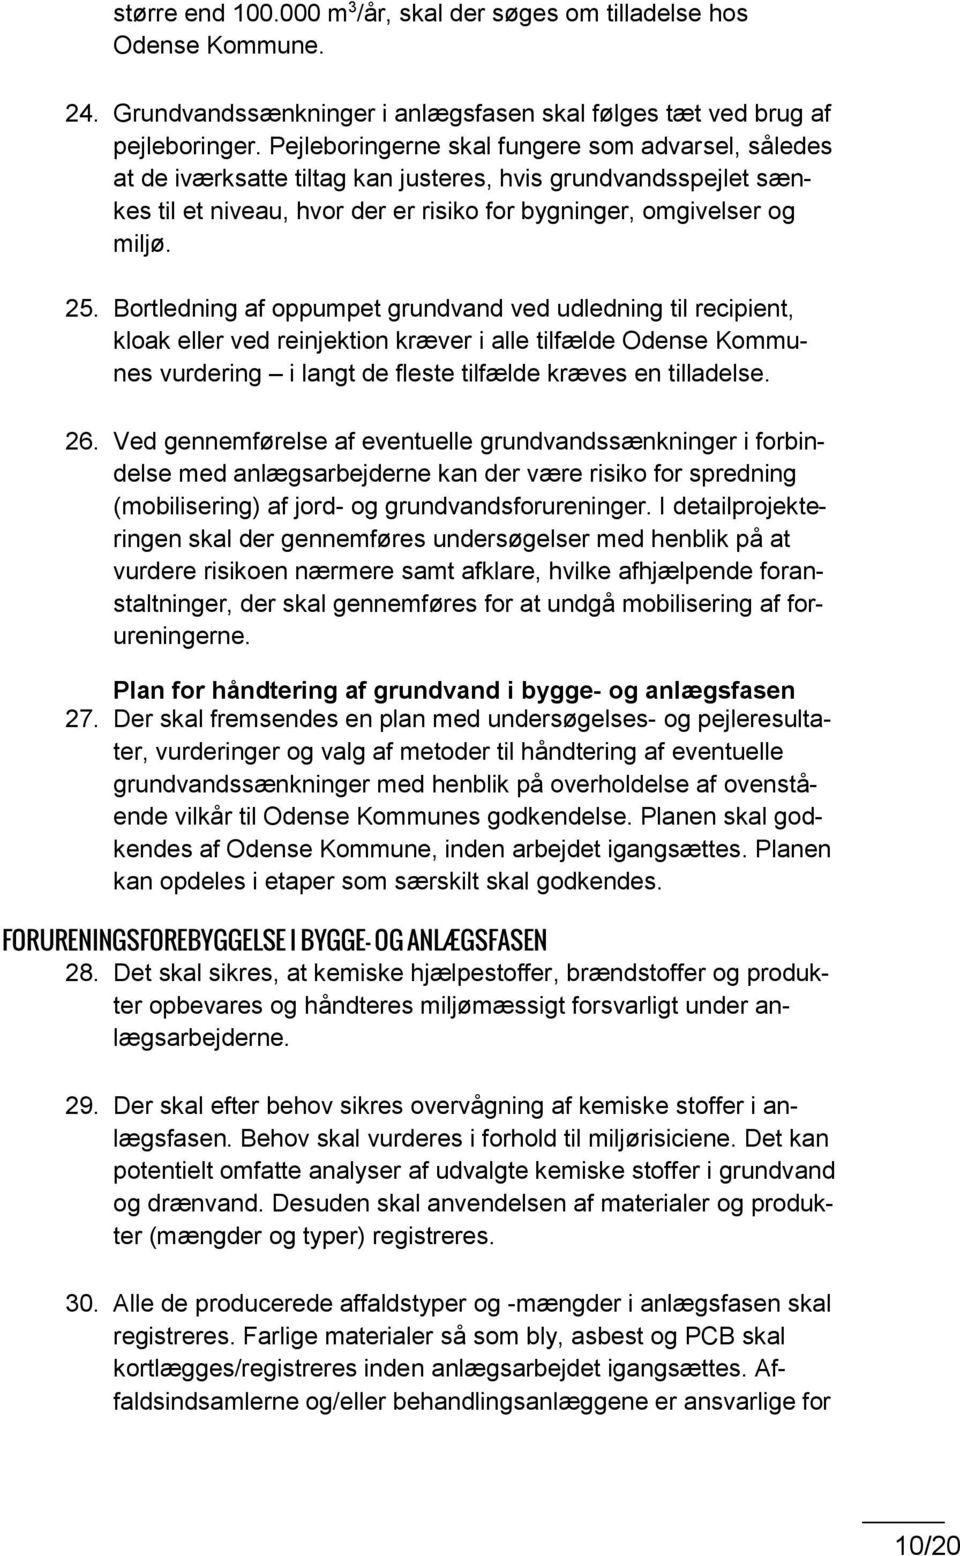 Bortledning af oppumpet grundvand ved udledning til recipient, kloak eller ved reinjektion kræver i alle tilfælde Odense Kommunes vurdering i langt de fleste tilfælde kræves en tilladelse. 26.